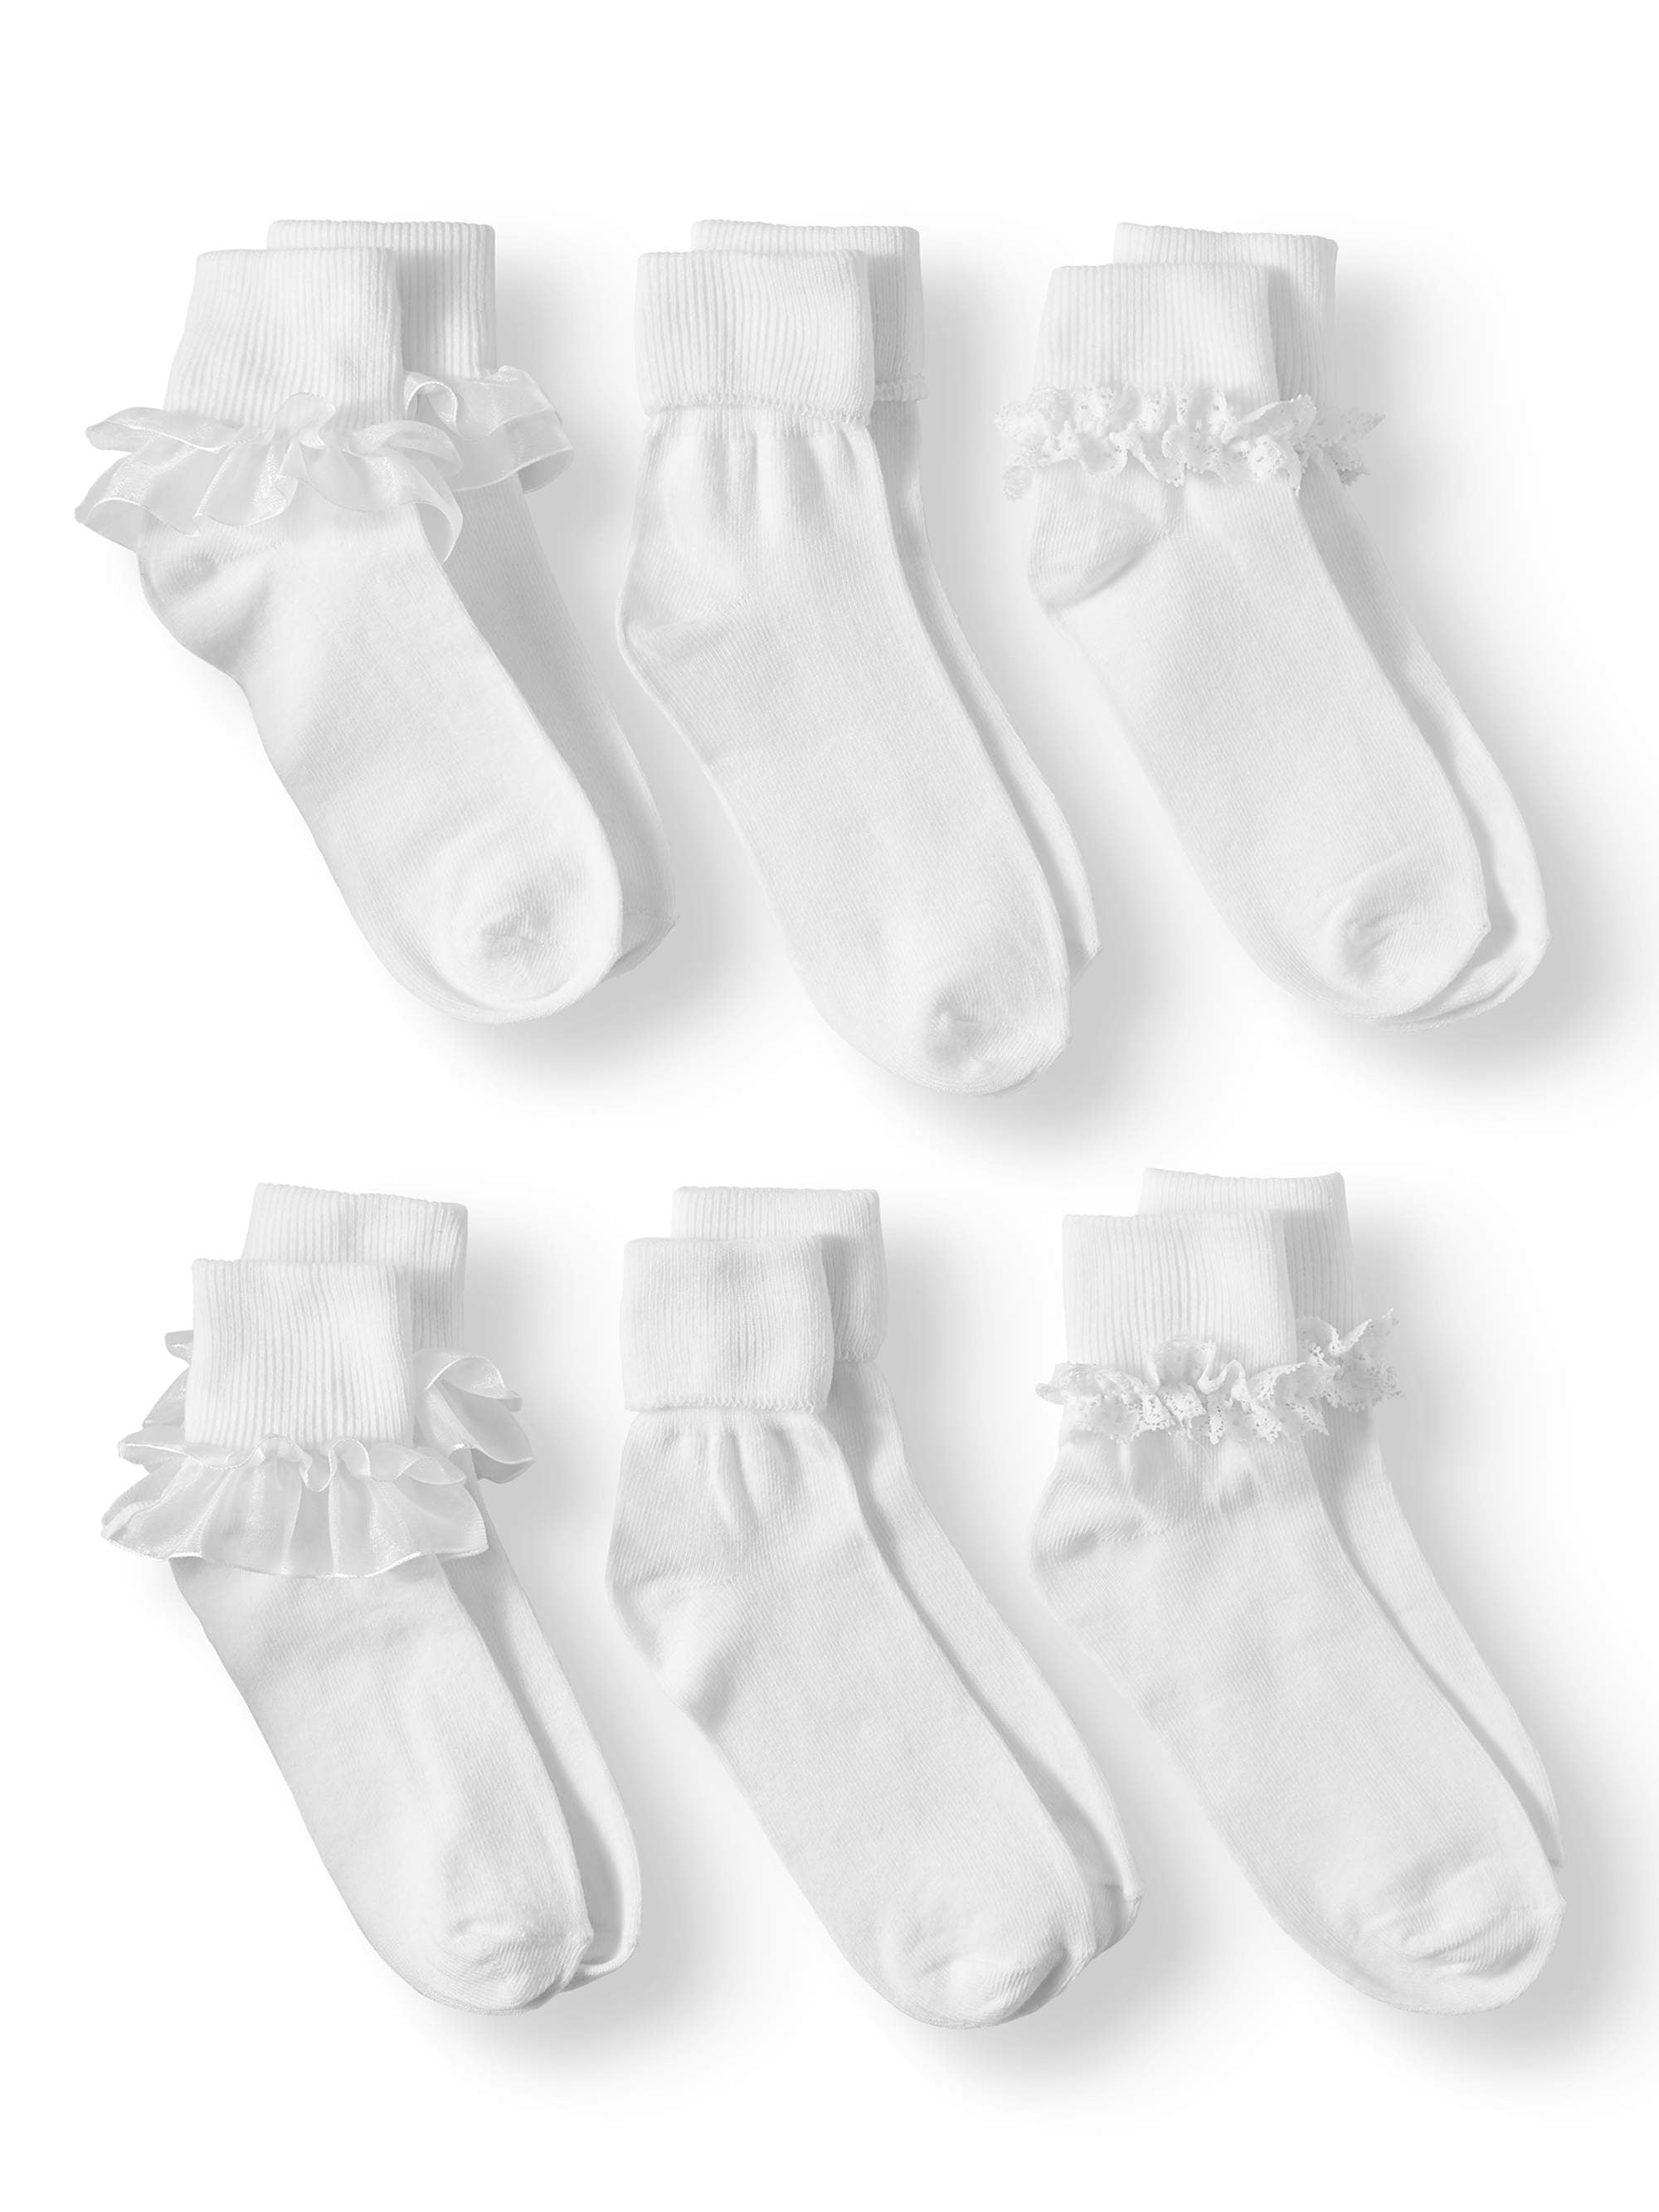 2T-12T 3 Pack Little Girls Cotton Lace Ruffle Princess Style Dress Socks 